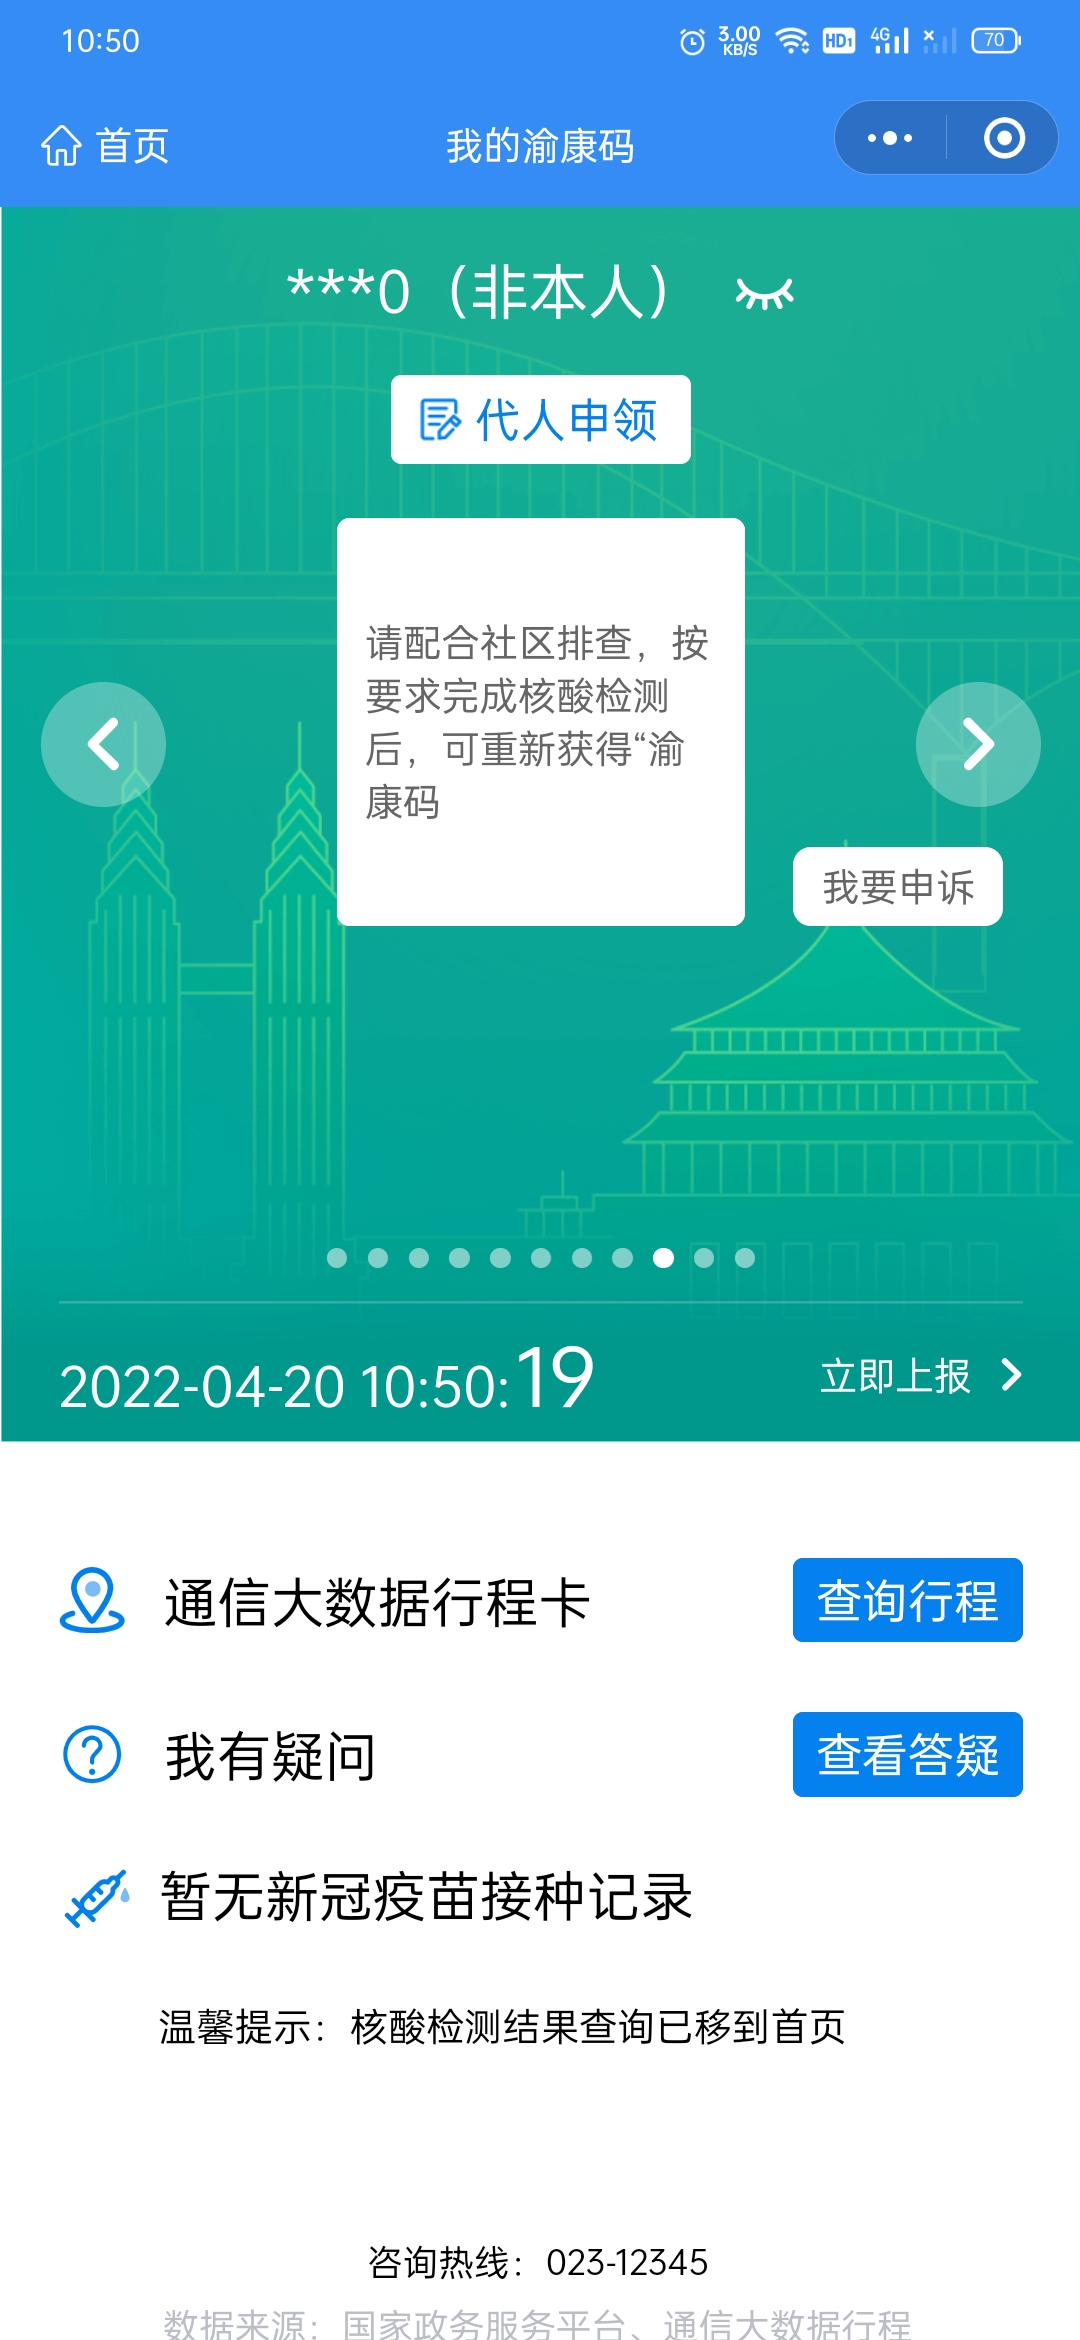 重庆行程码红码图片图片